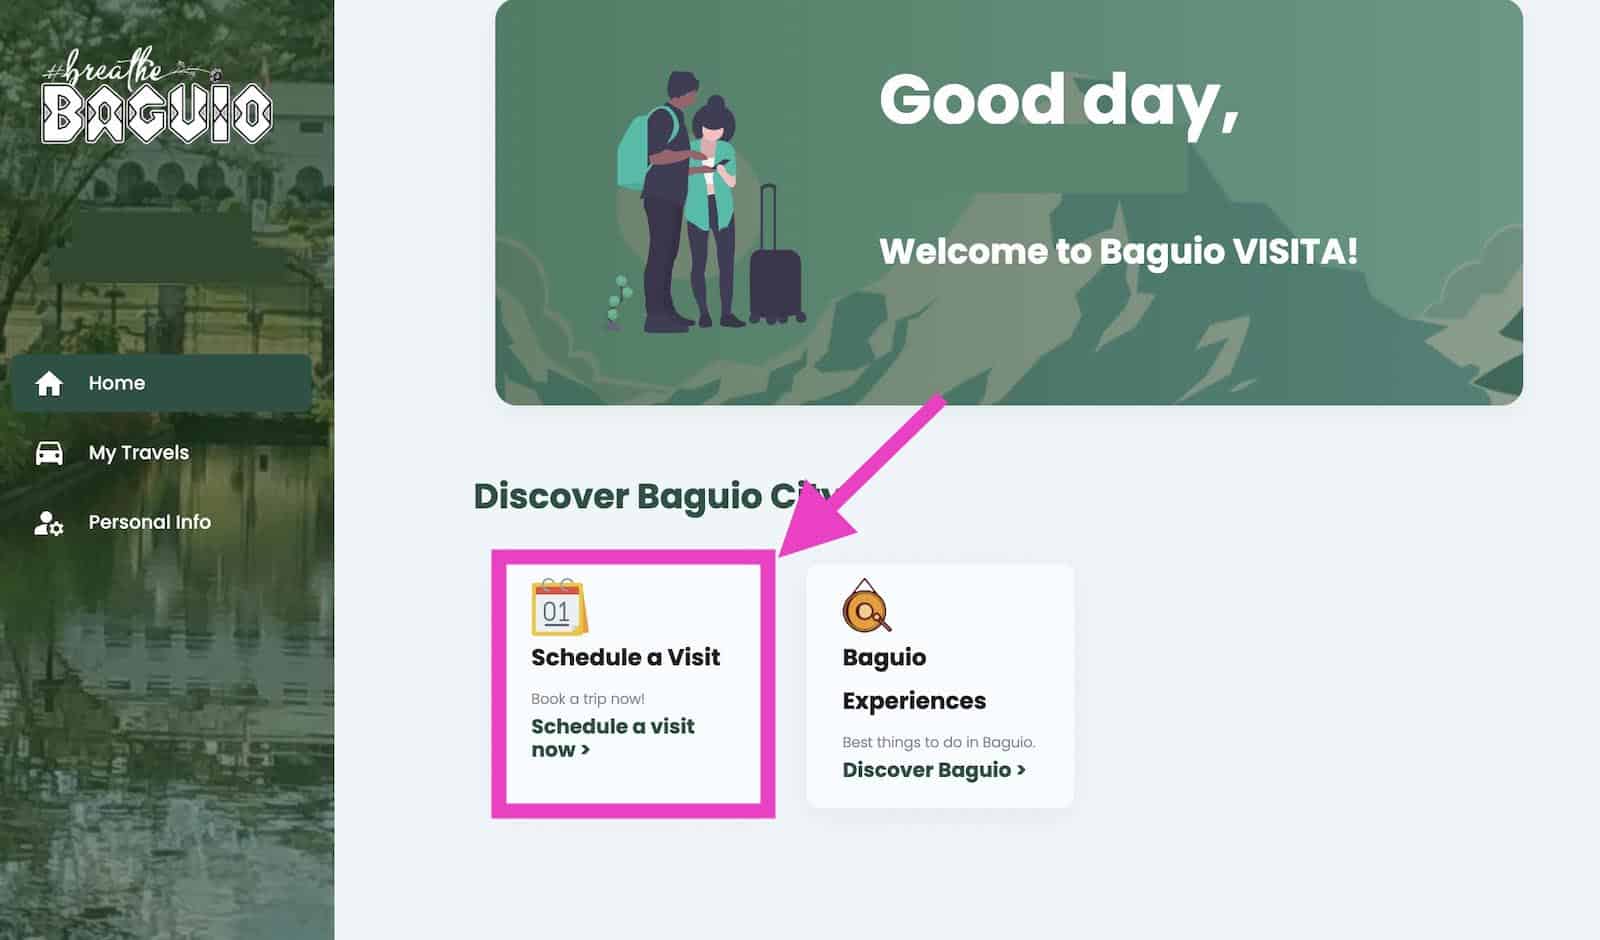 Baguio Visita Schedule Trip Page